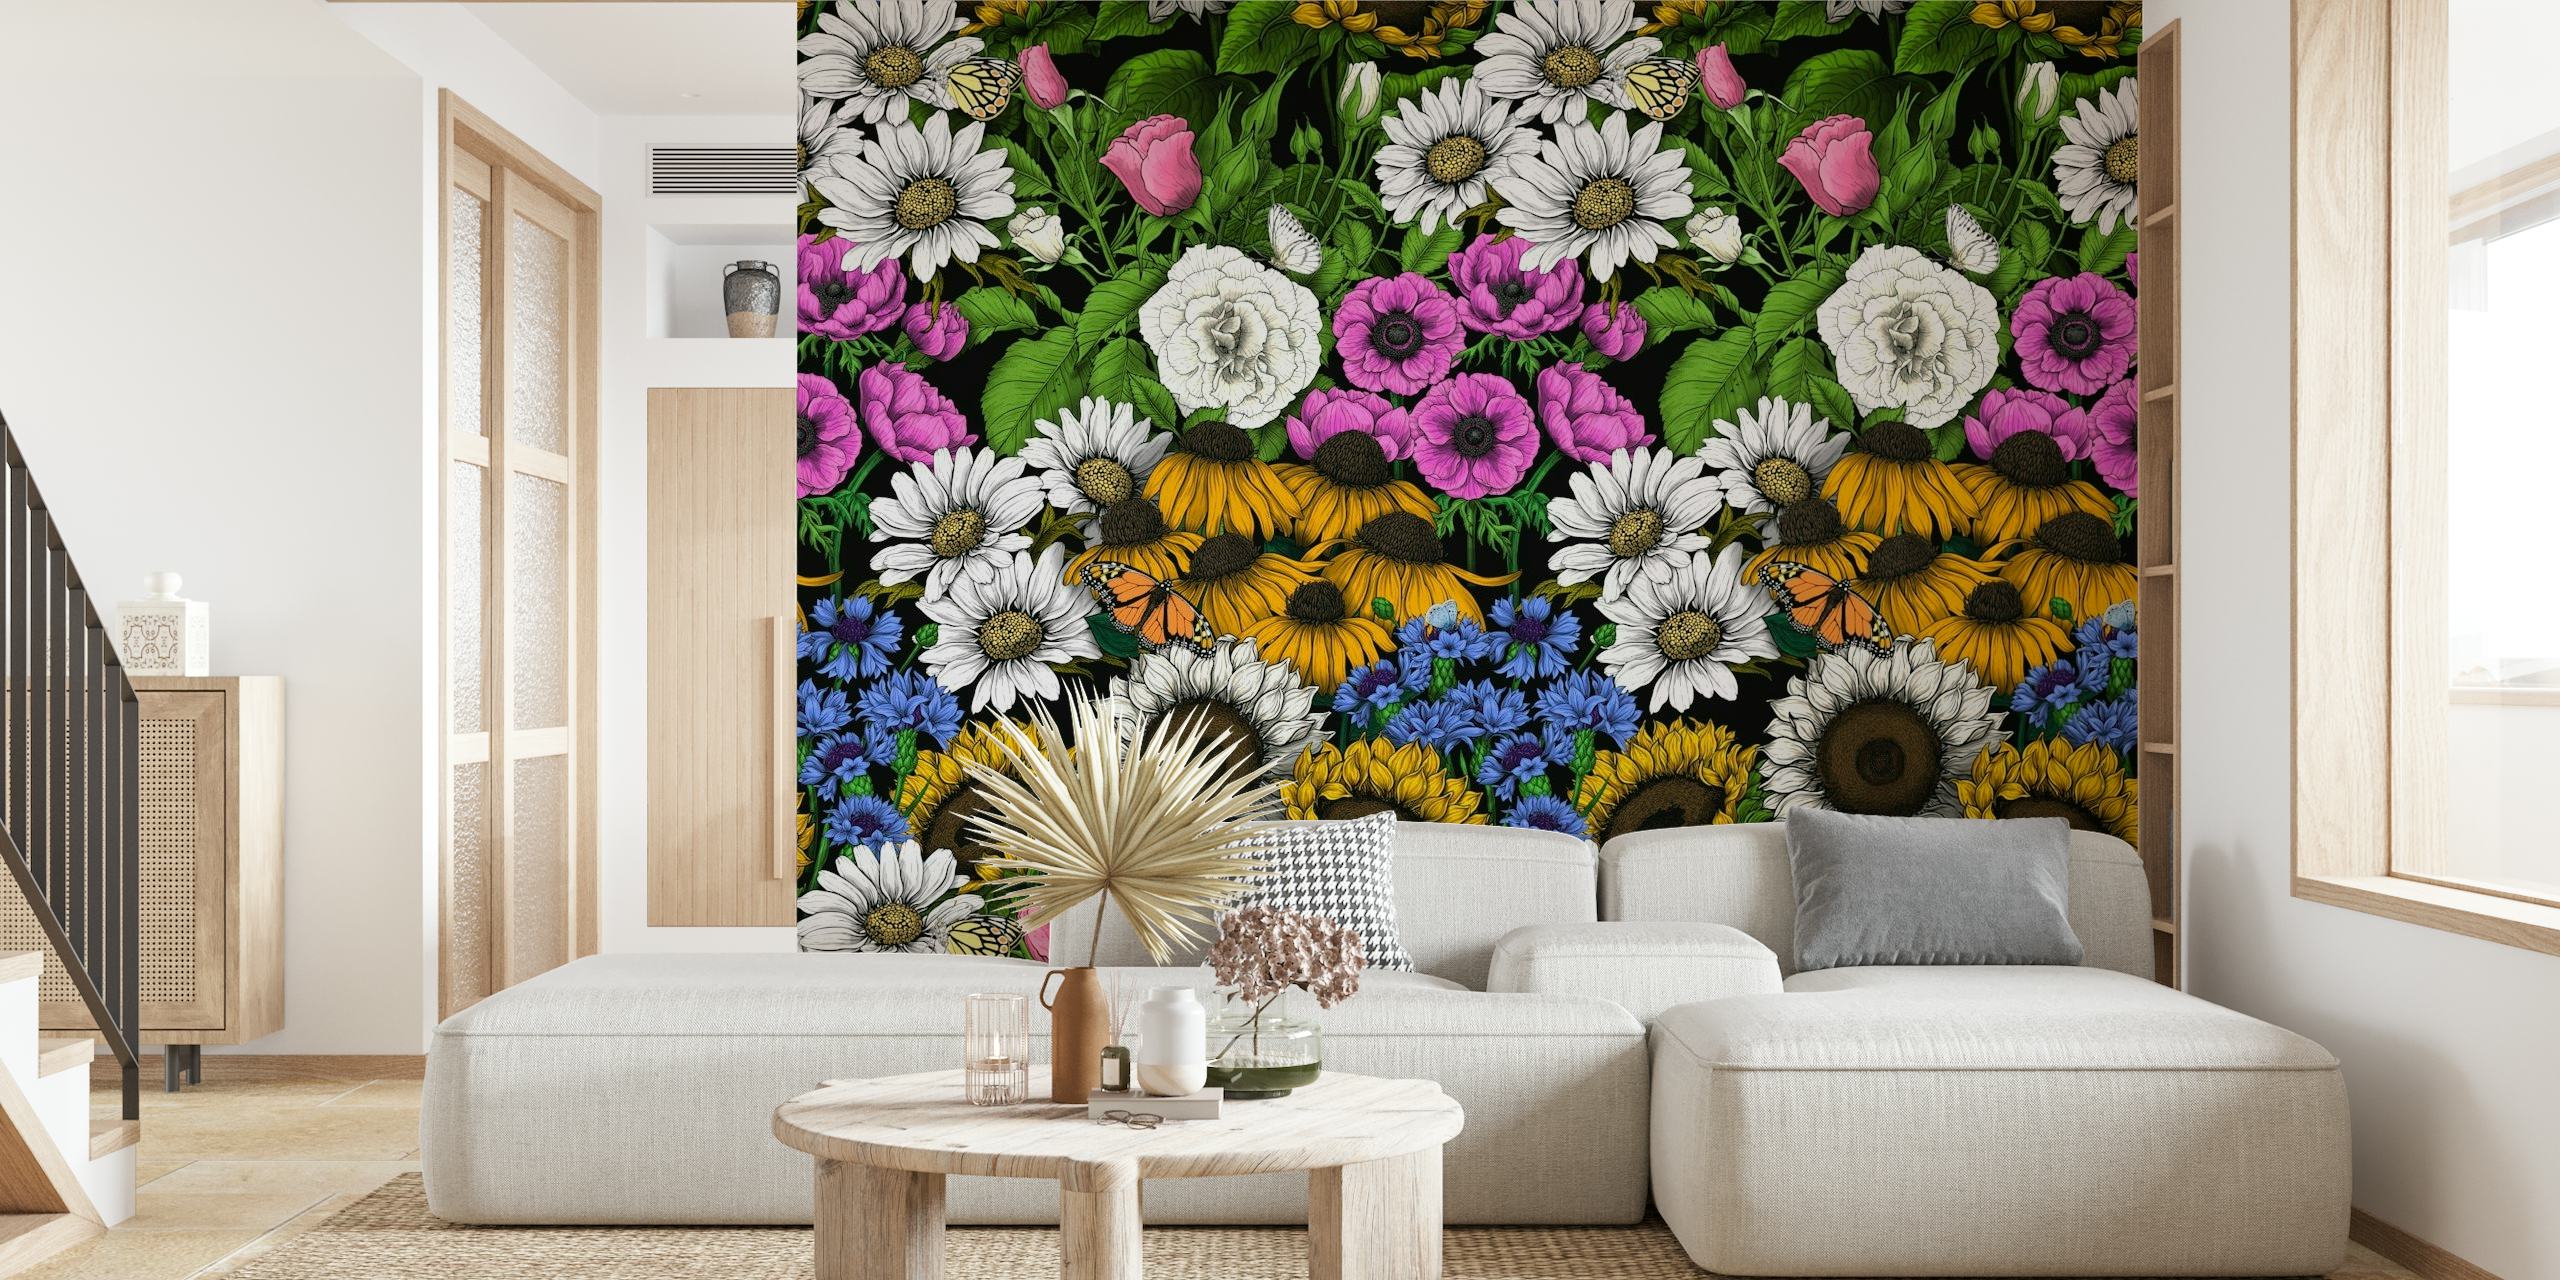 Garden bedding- Collection 4 wallpaper